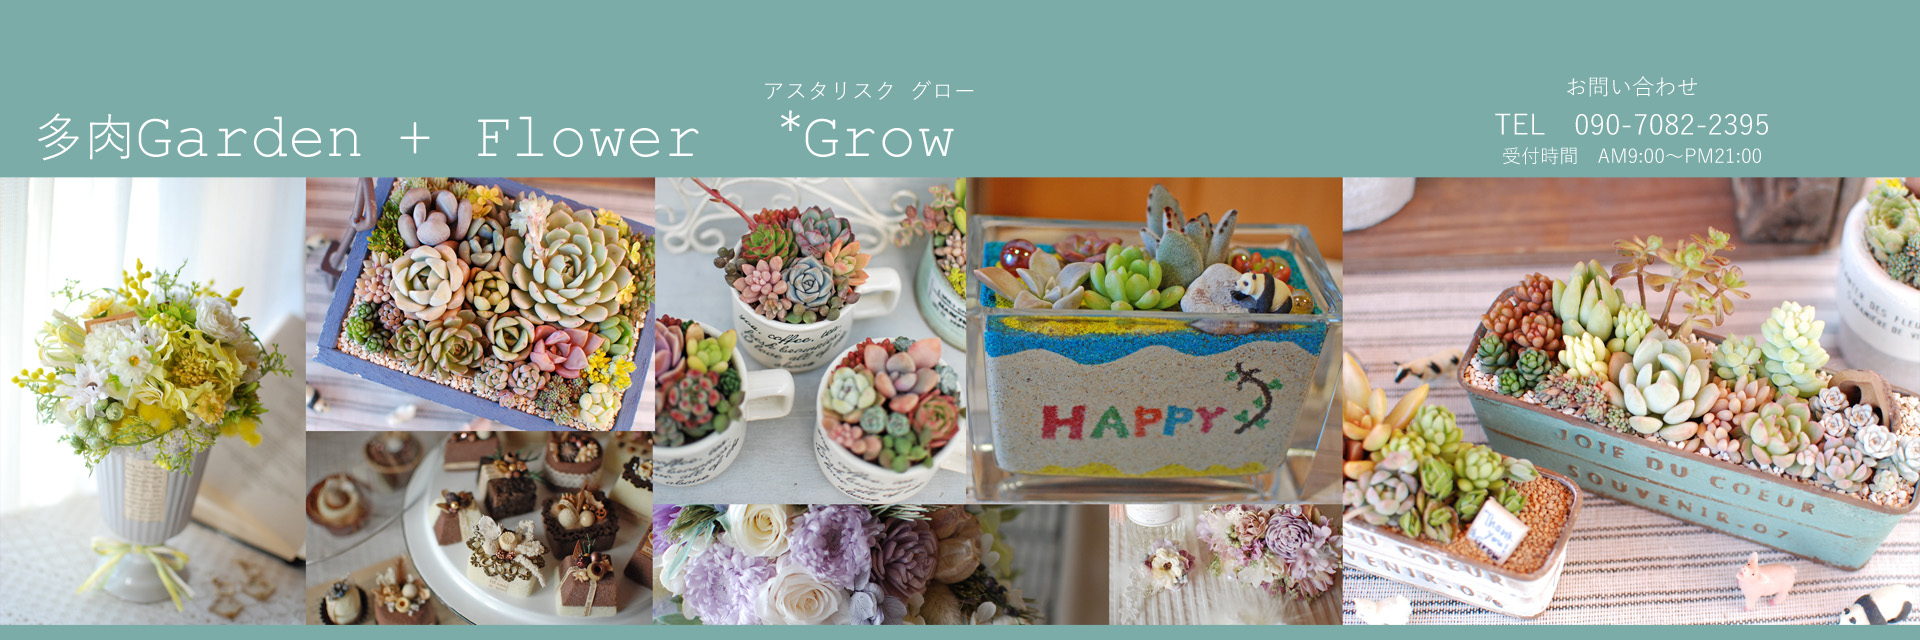 多肉Garden + Flower ＊Grow｜福井